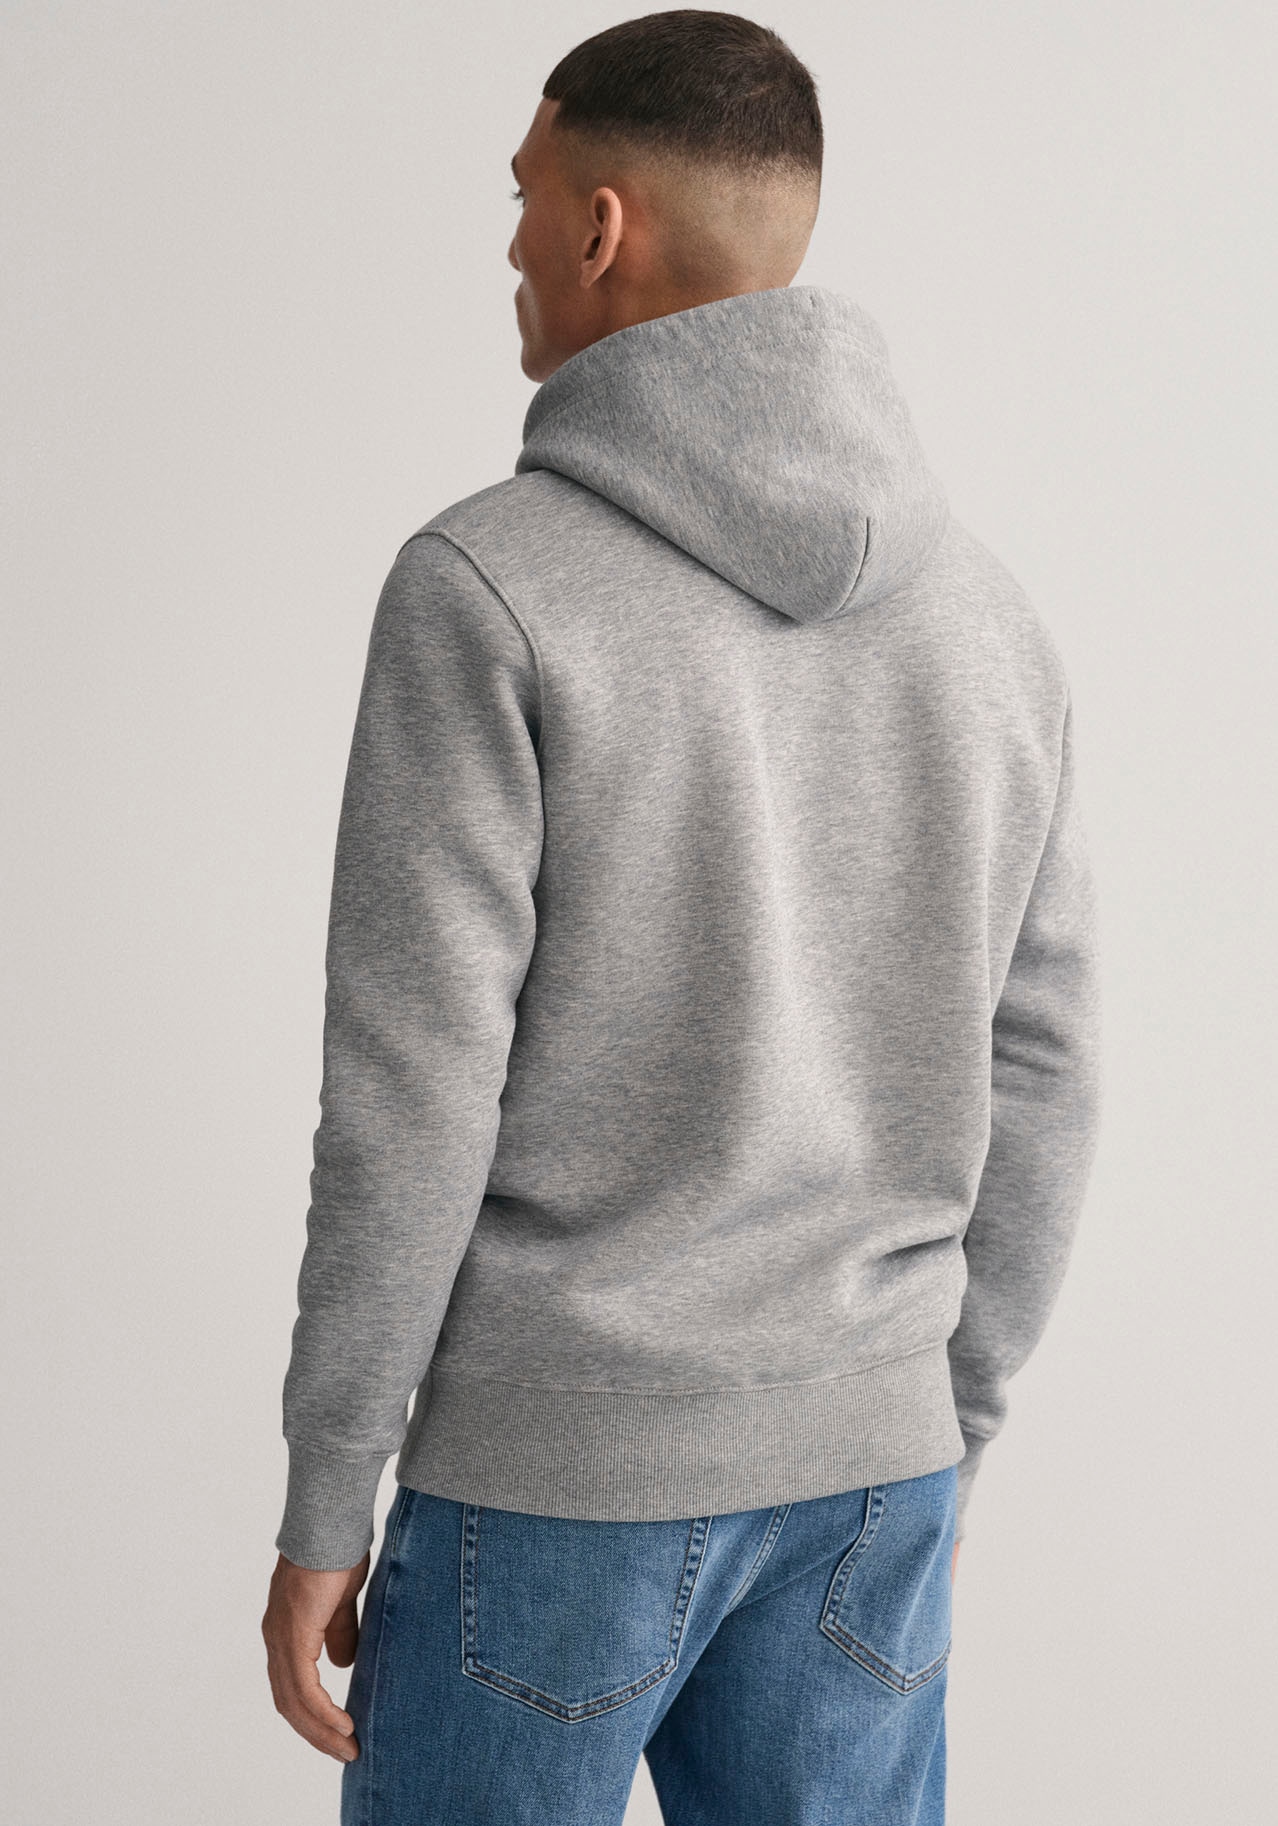 - kaufen versandkostenfrei Sweatshirts ohne ➤ Mindestbestellwert